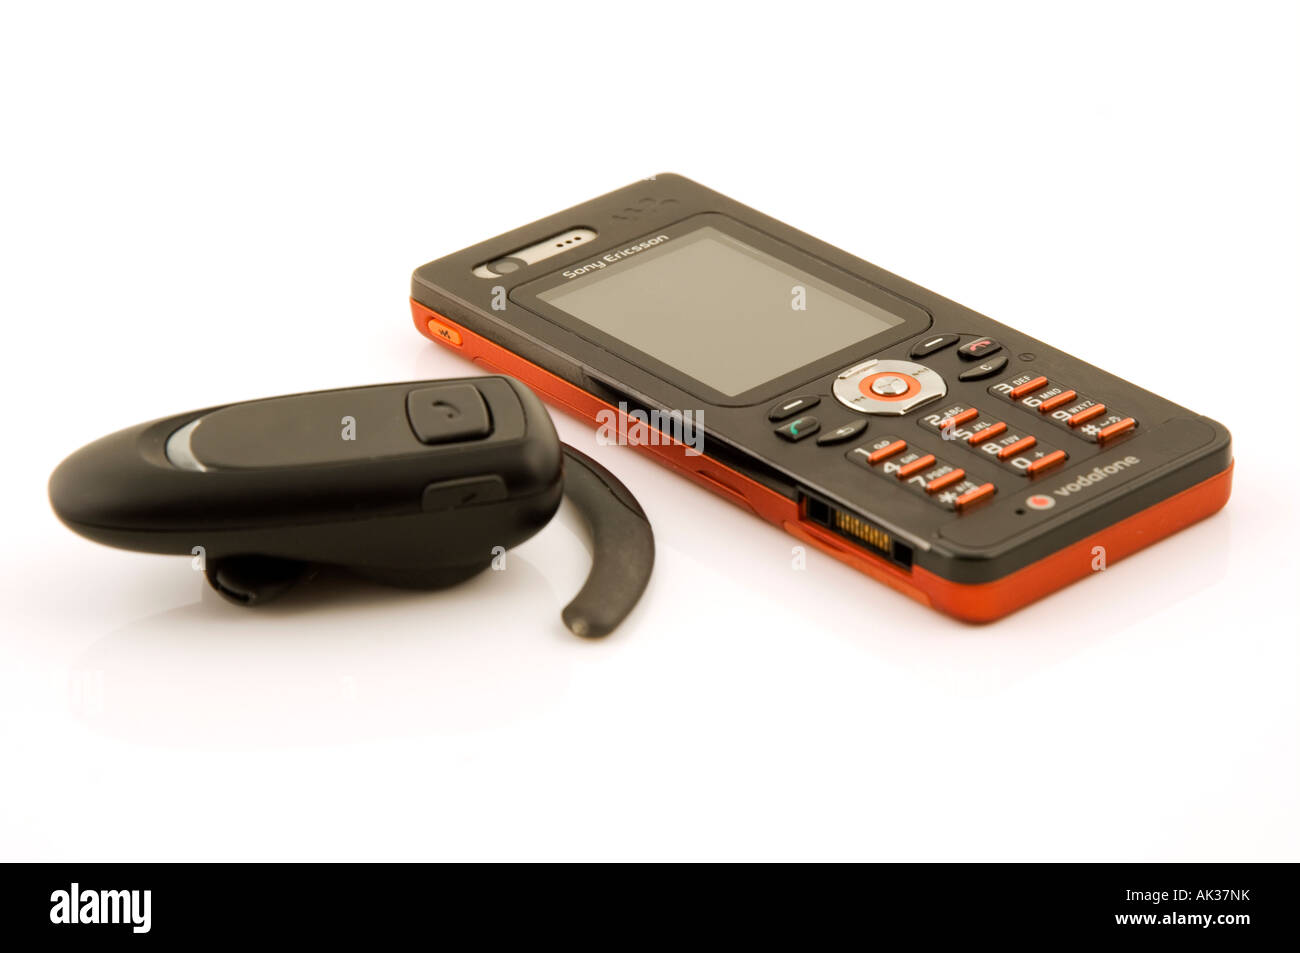 Sony SBH52, un manos libres Bluetooth que también puede usarse